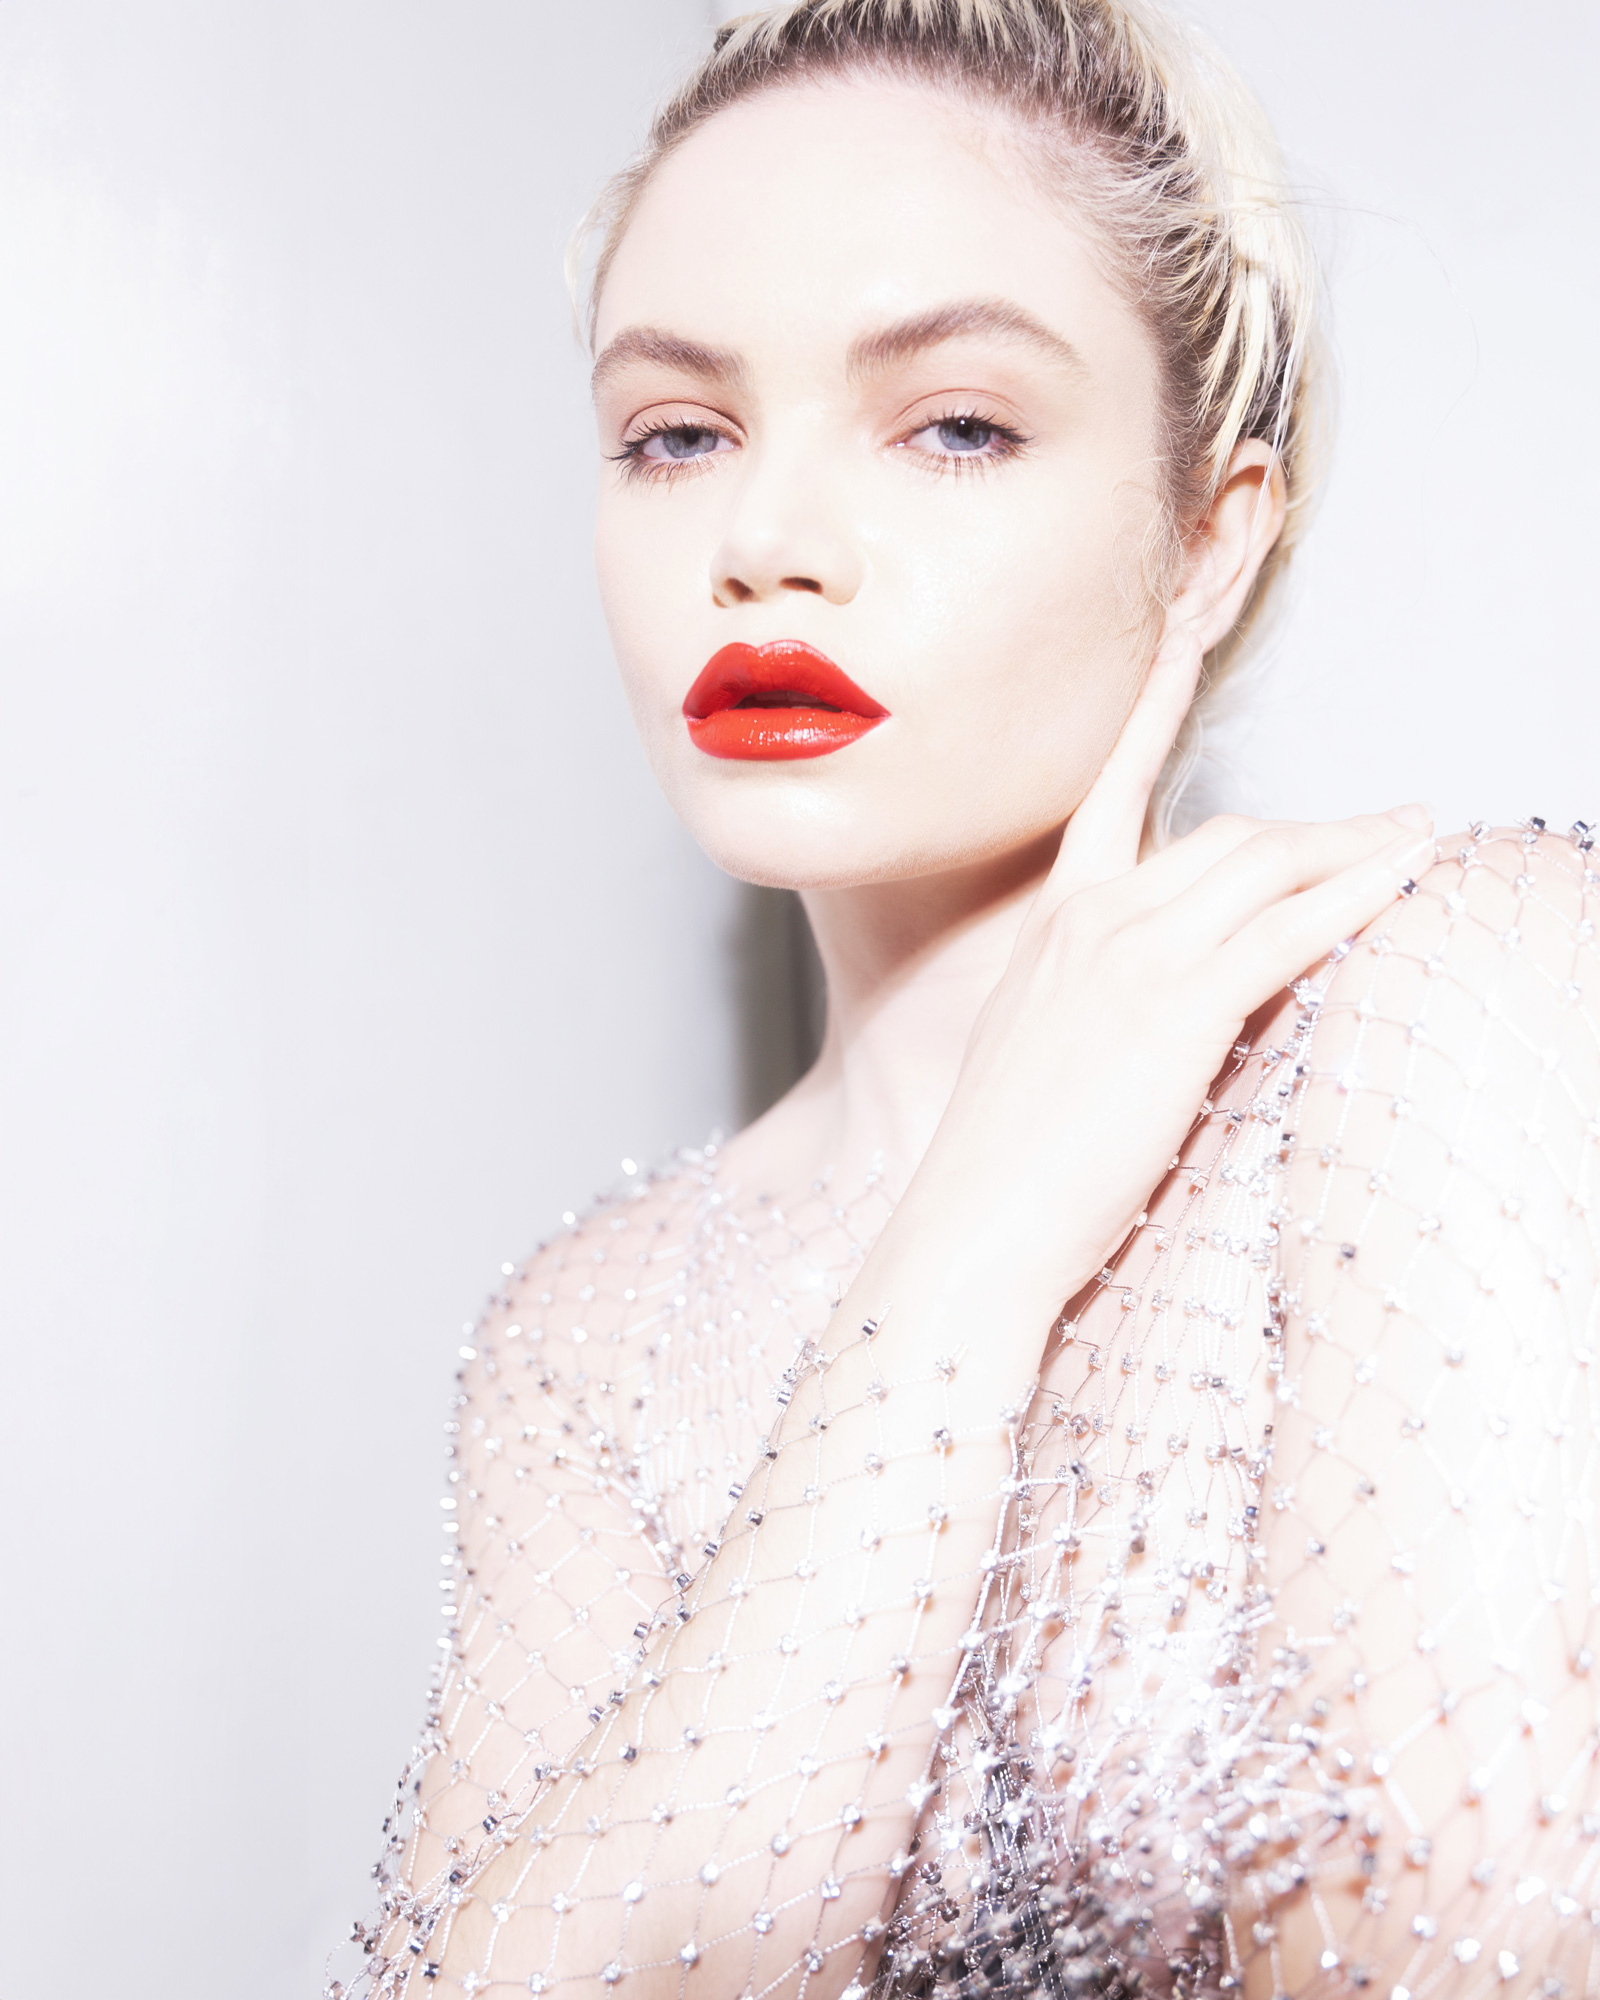 Beauty Photoshoot with red lip, Zoe Model Walid Azami